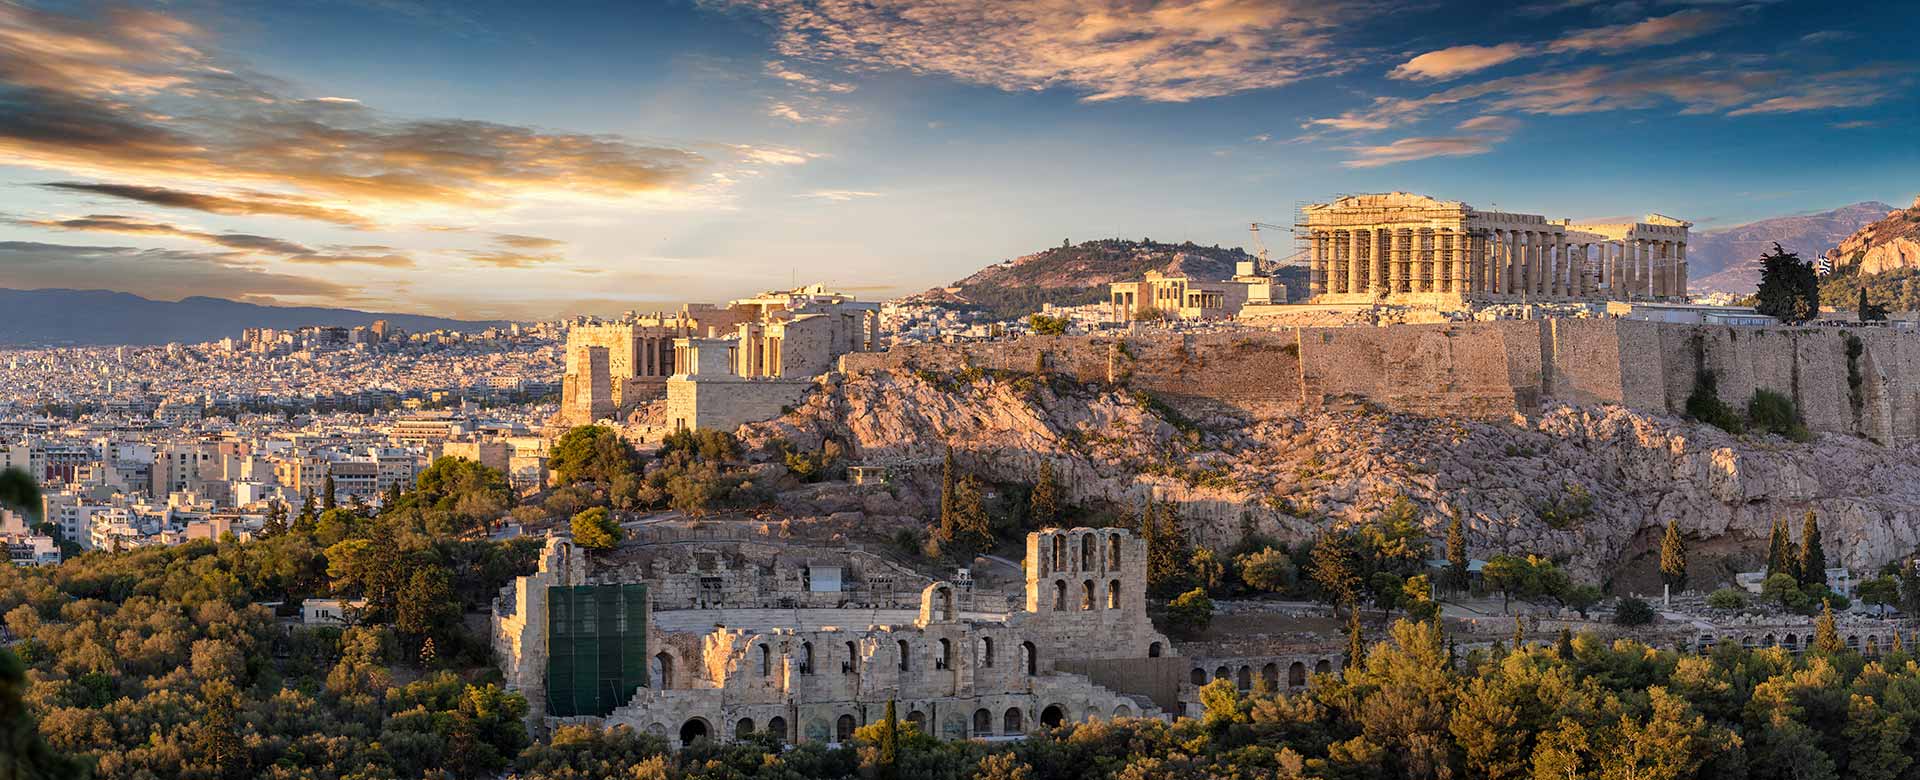 Foto aerea dell'Acropoli di Atene